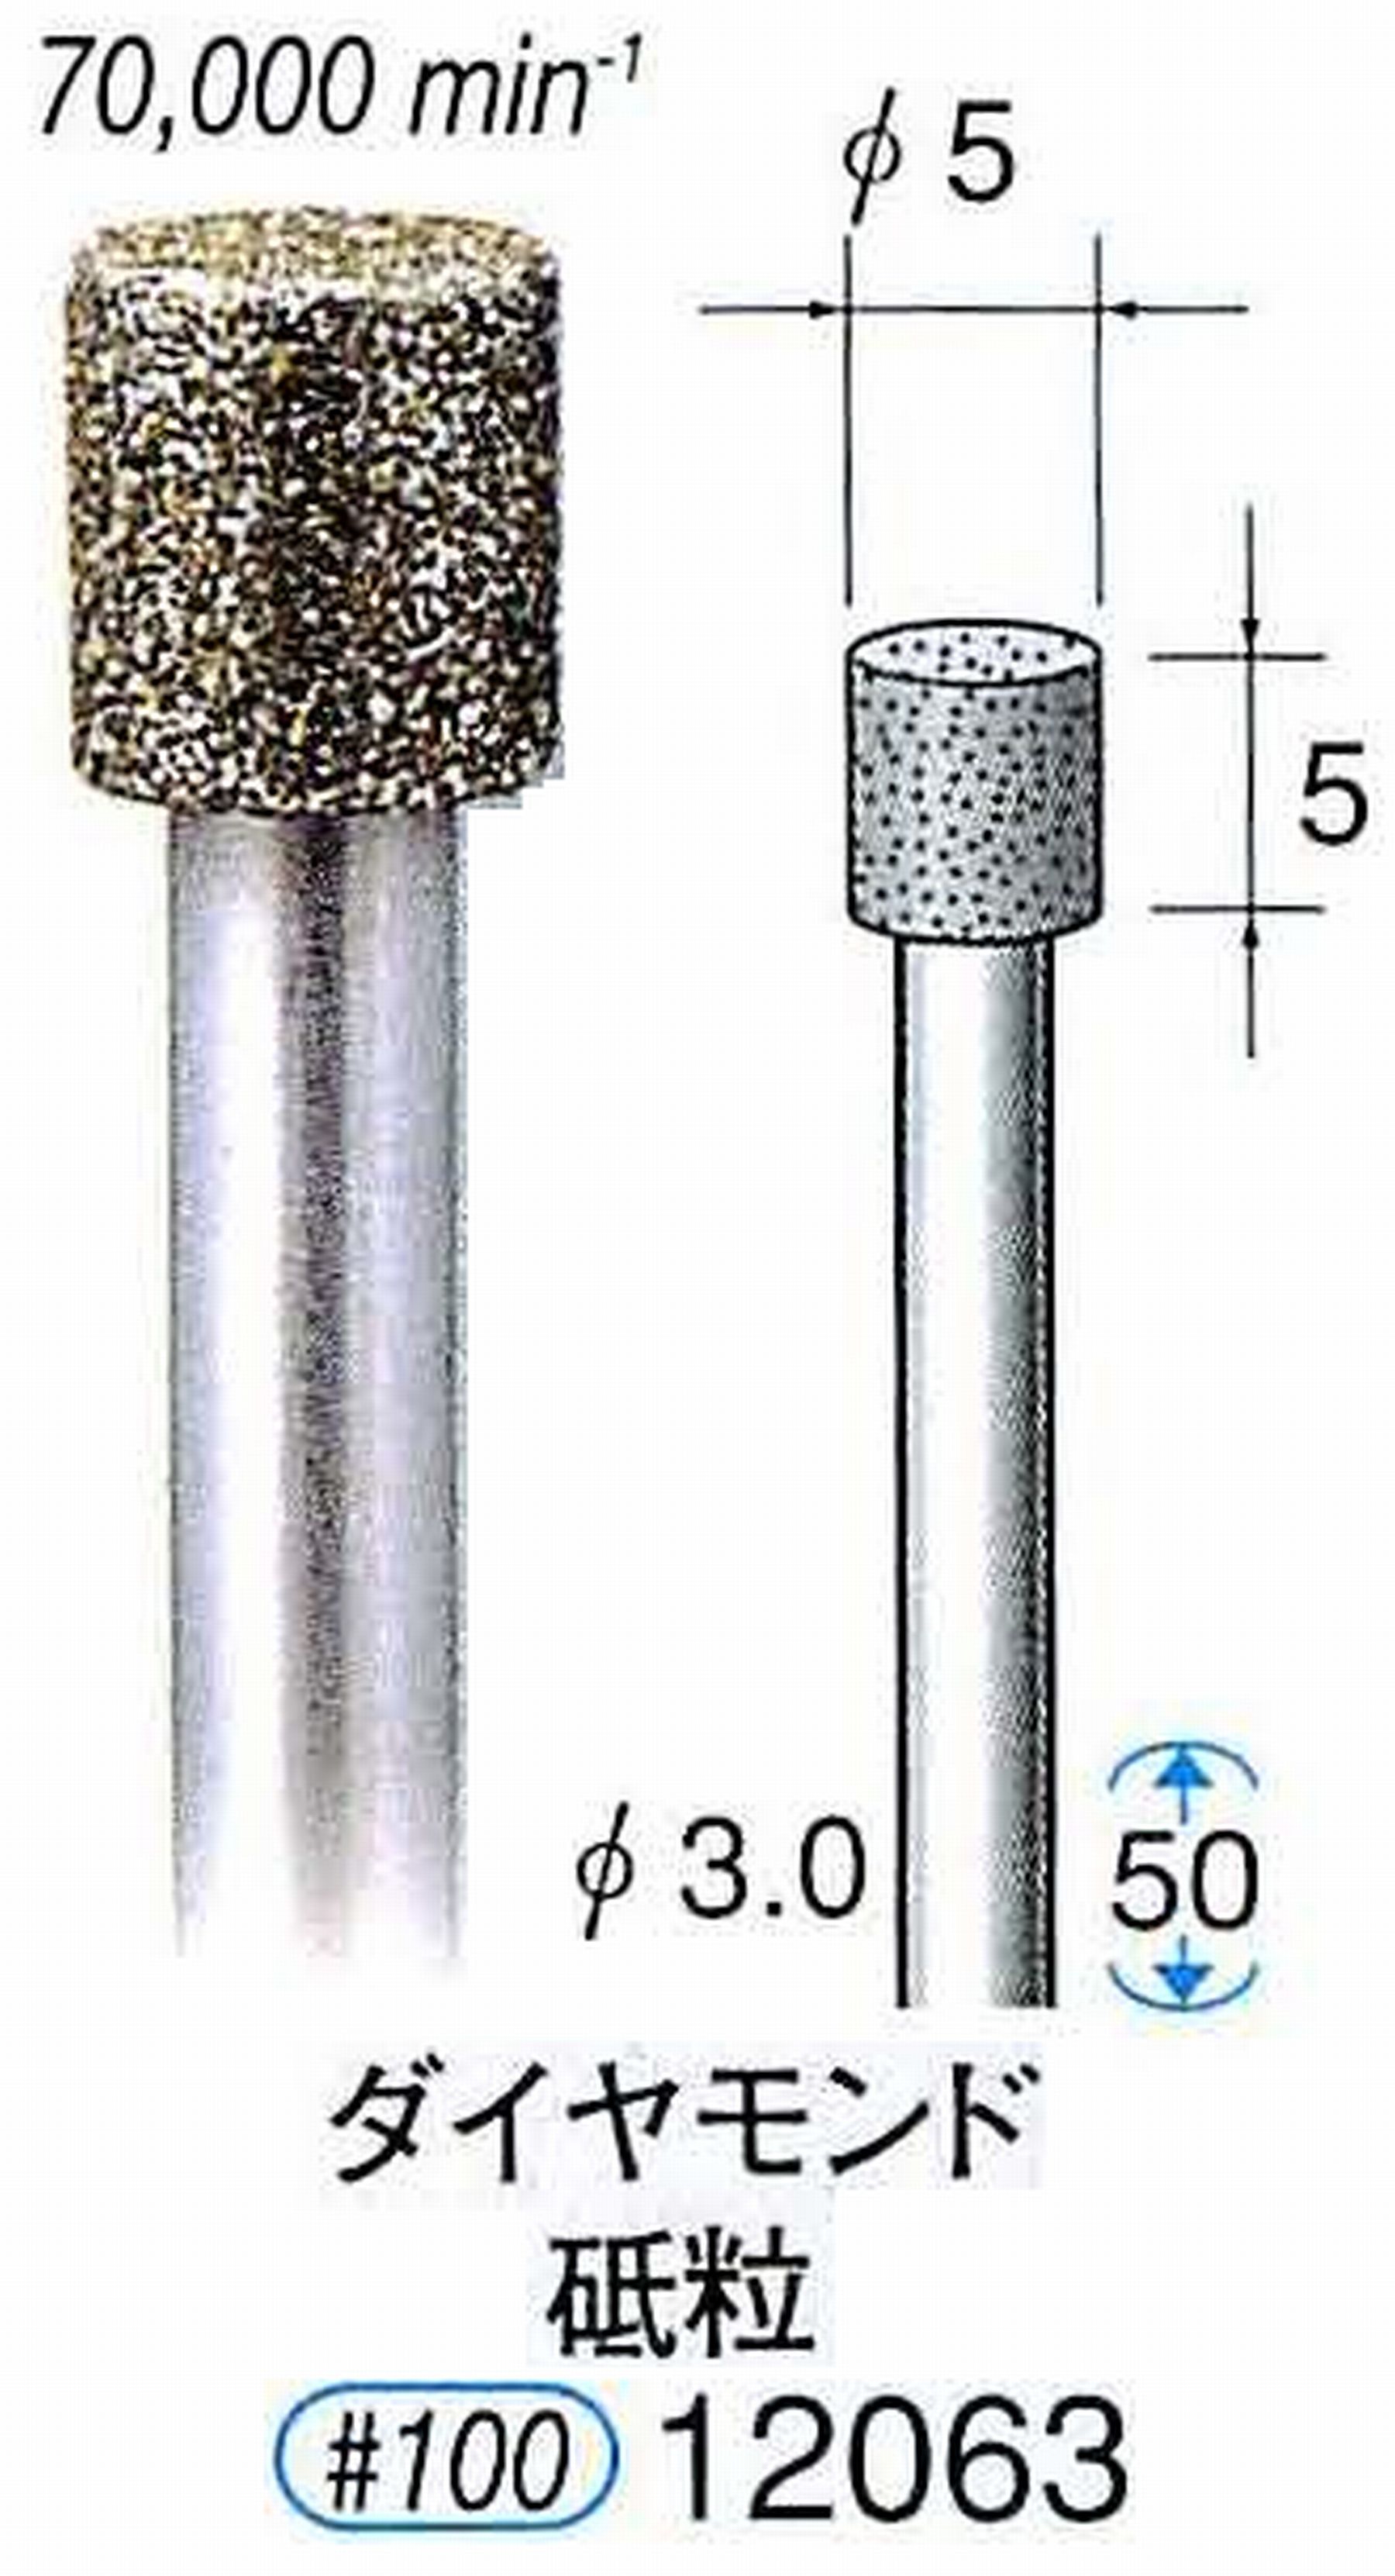 ナカニシ/NAKANISHI 電着ダイヤモンド ダイヤモンド砥粒 軸径(シャンク)φ3.0mm 12063